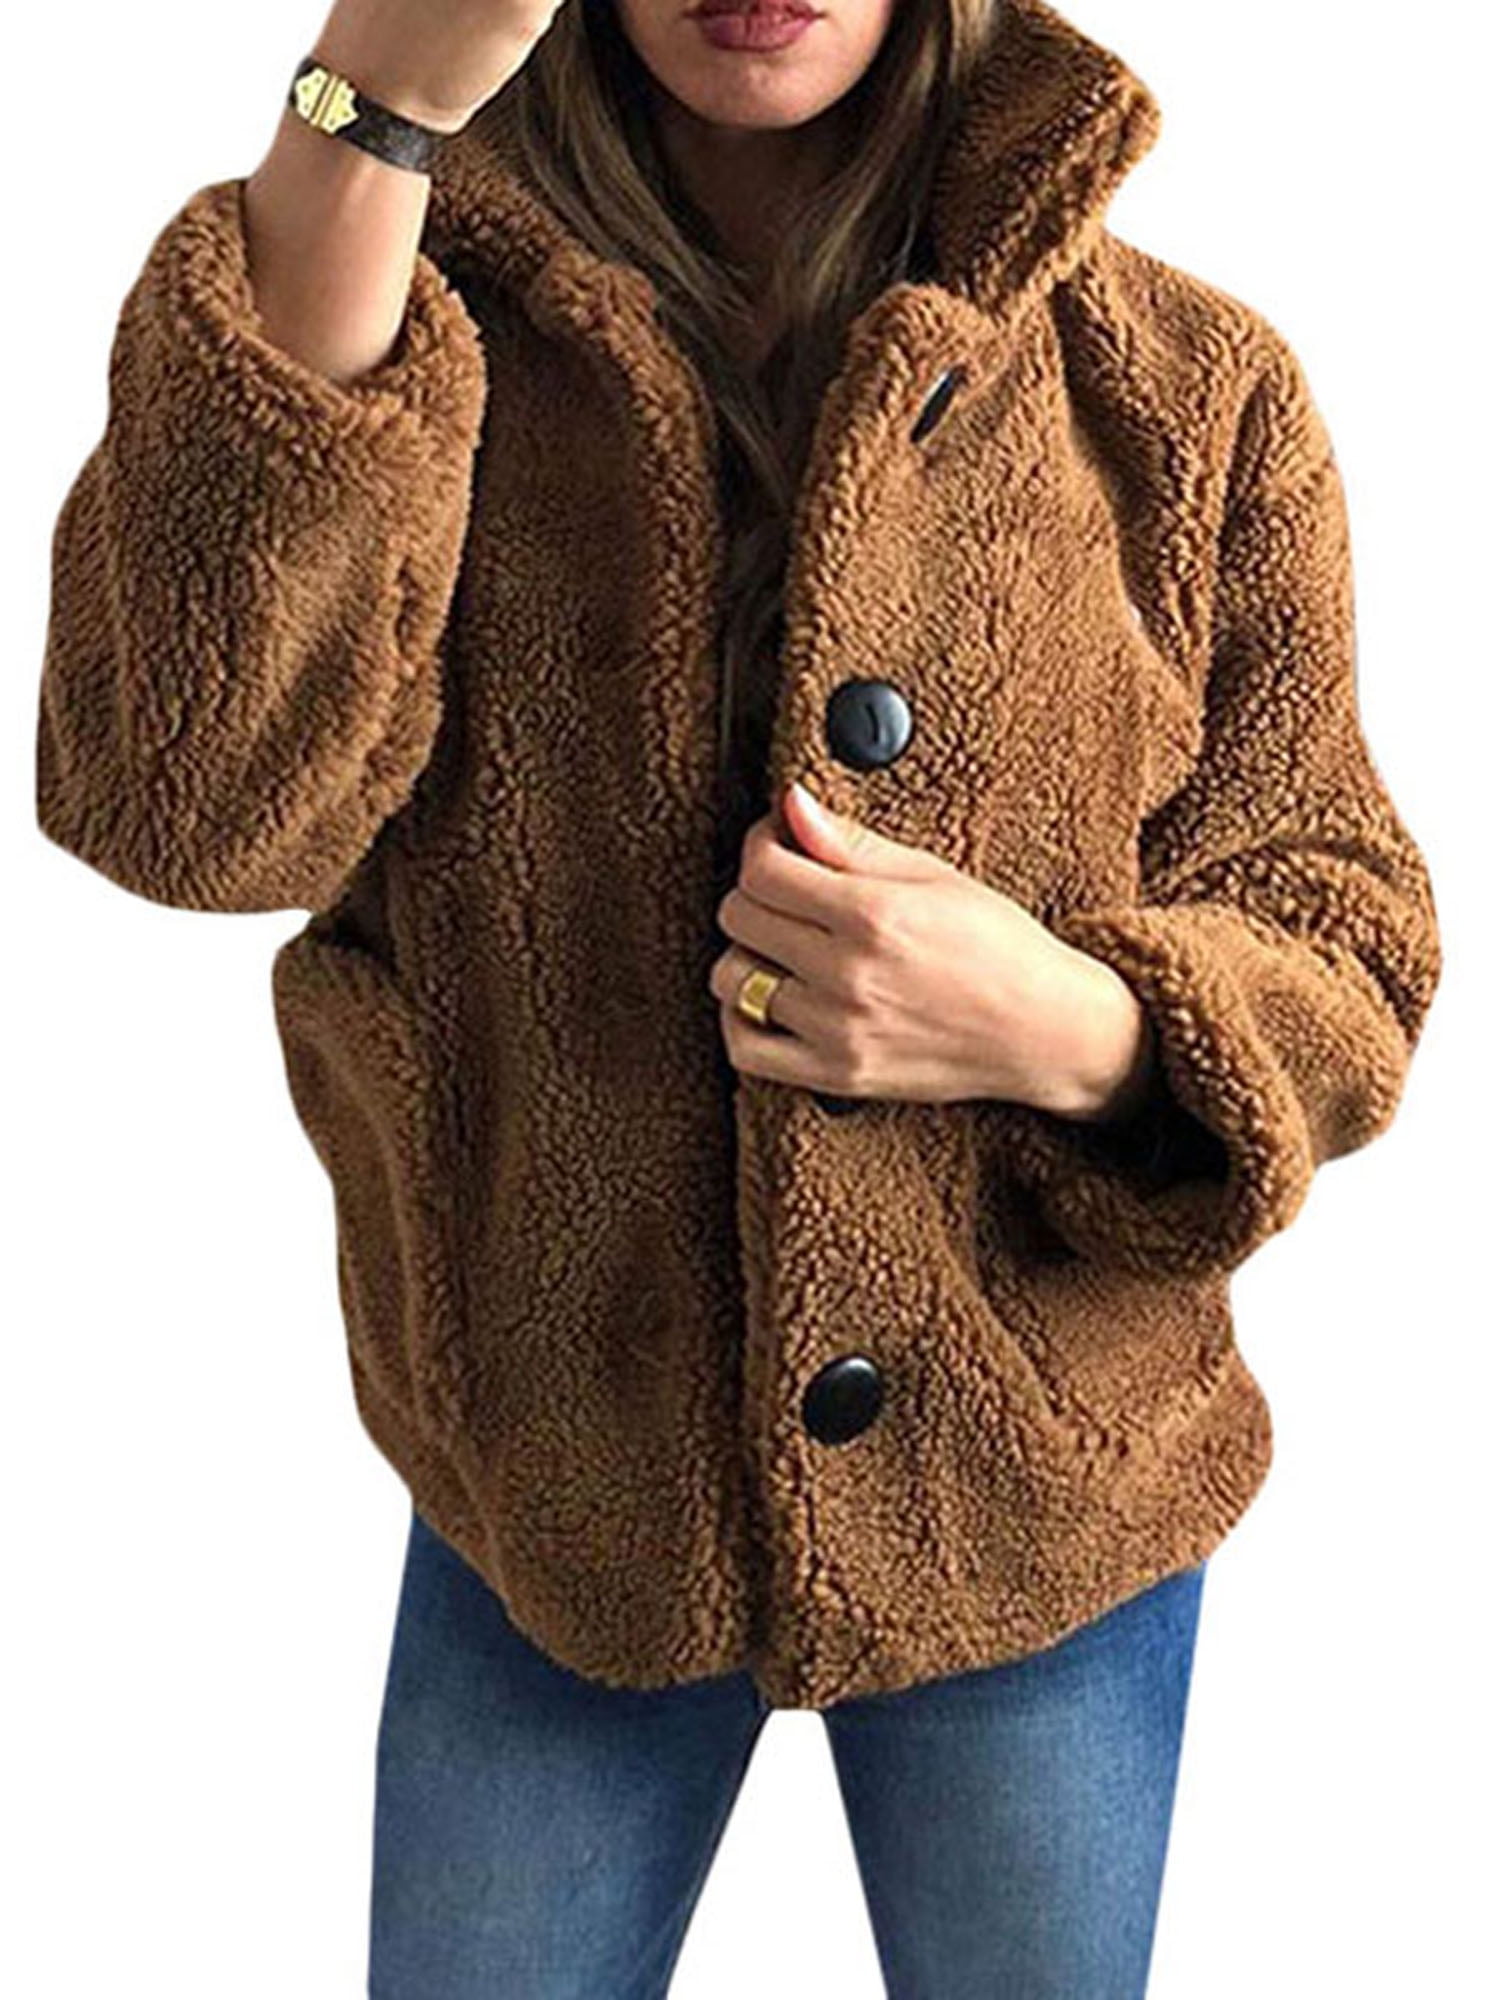 Lallc - Women's Teddy Bear Casual Fluffy Jacket Winter Outerwears ...